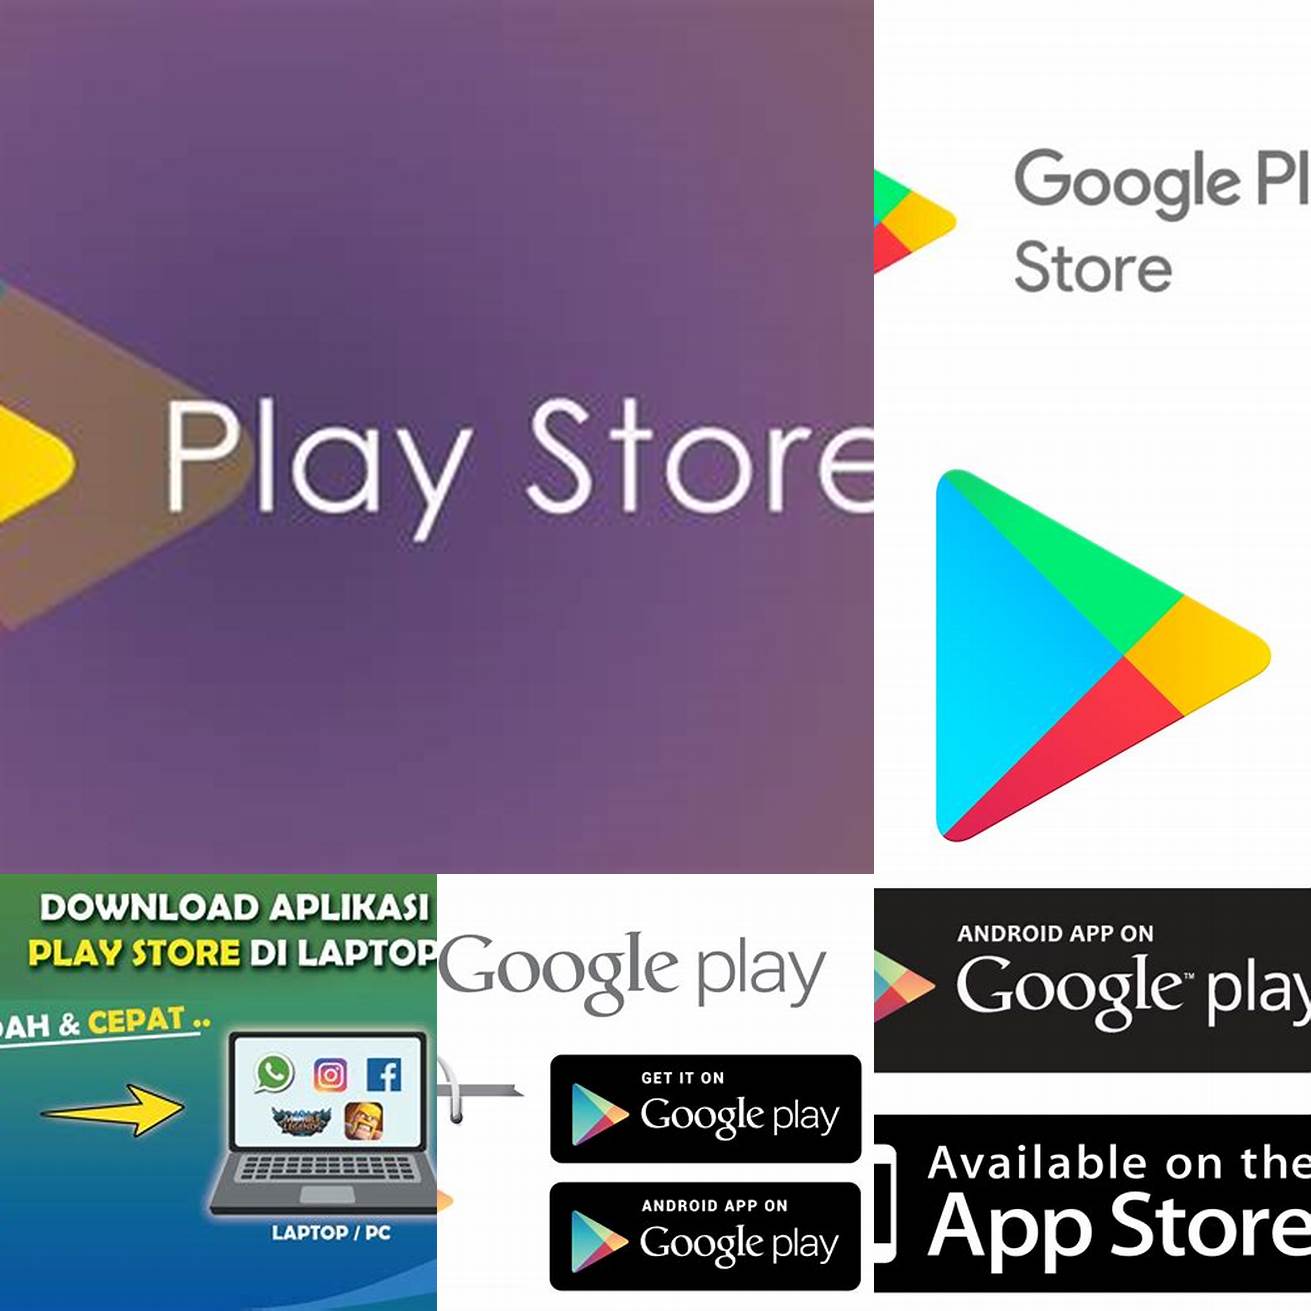 1 Buka Google Play Store atau App Store di perangkat Anda